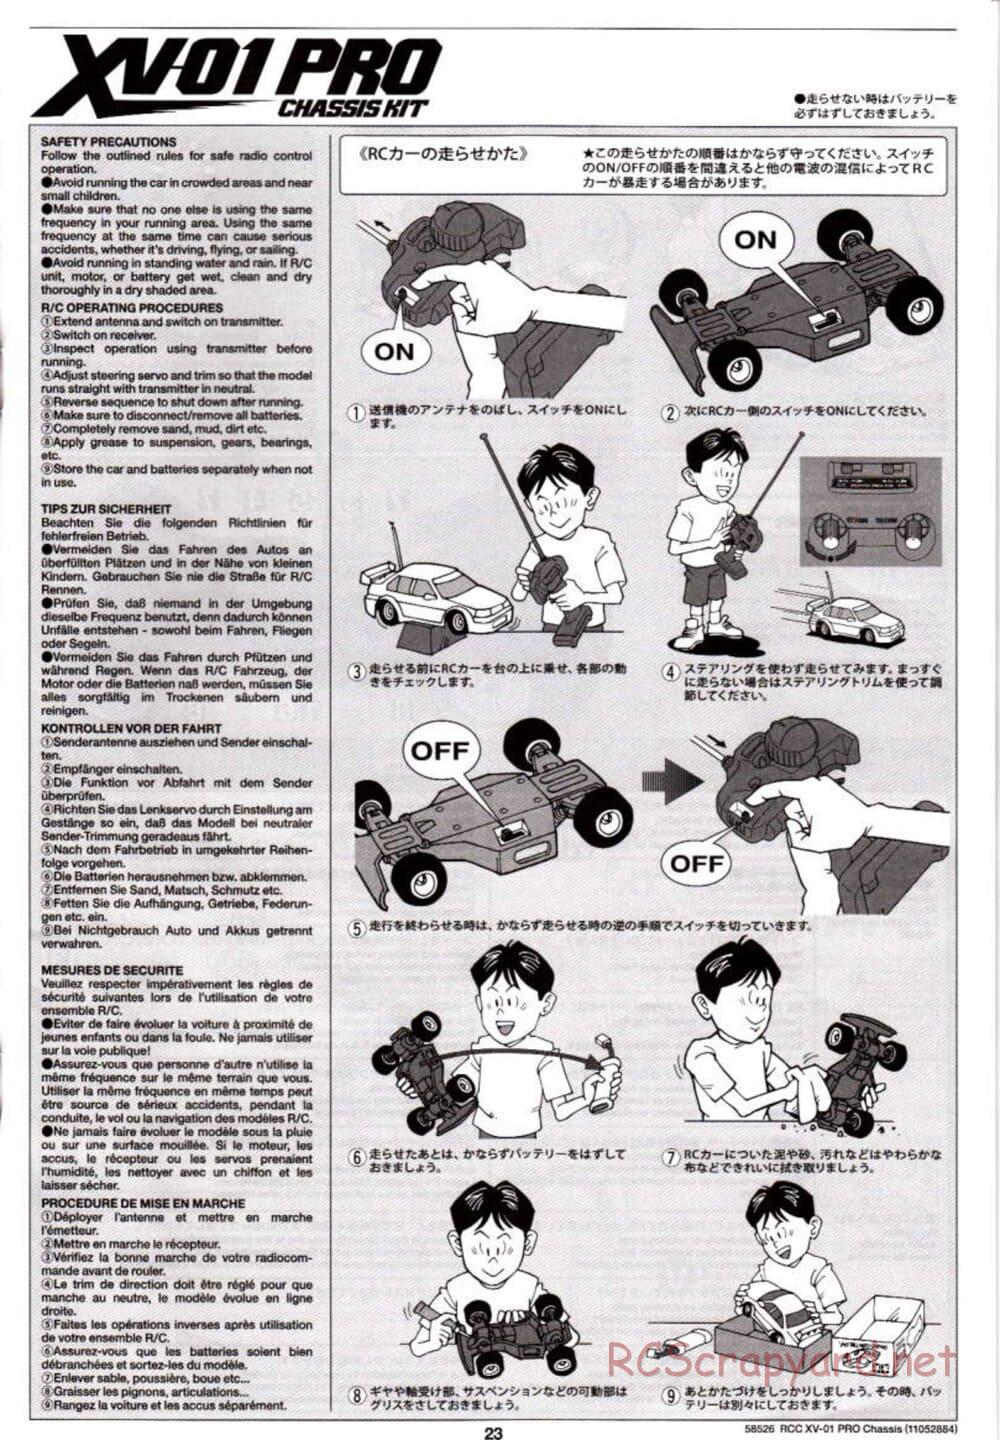 Tamiya - XV-01 PRO Chassis - Manual - Page 23